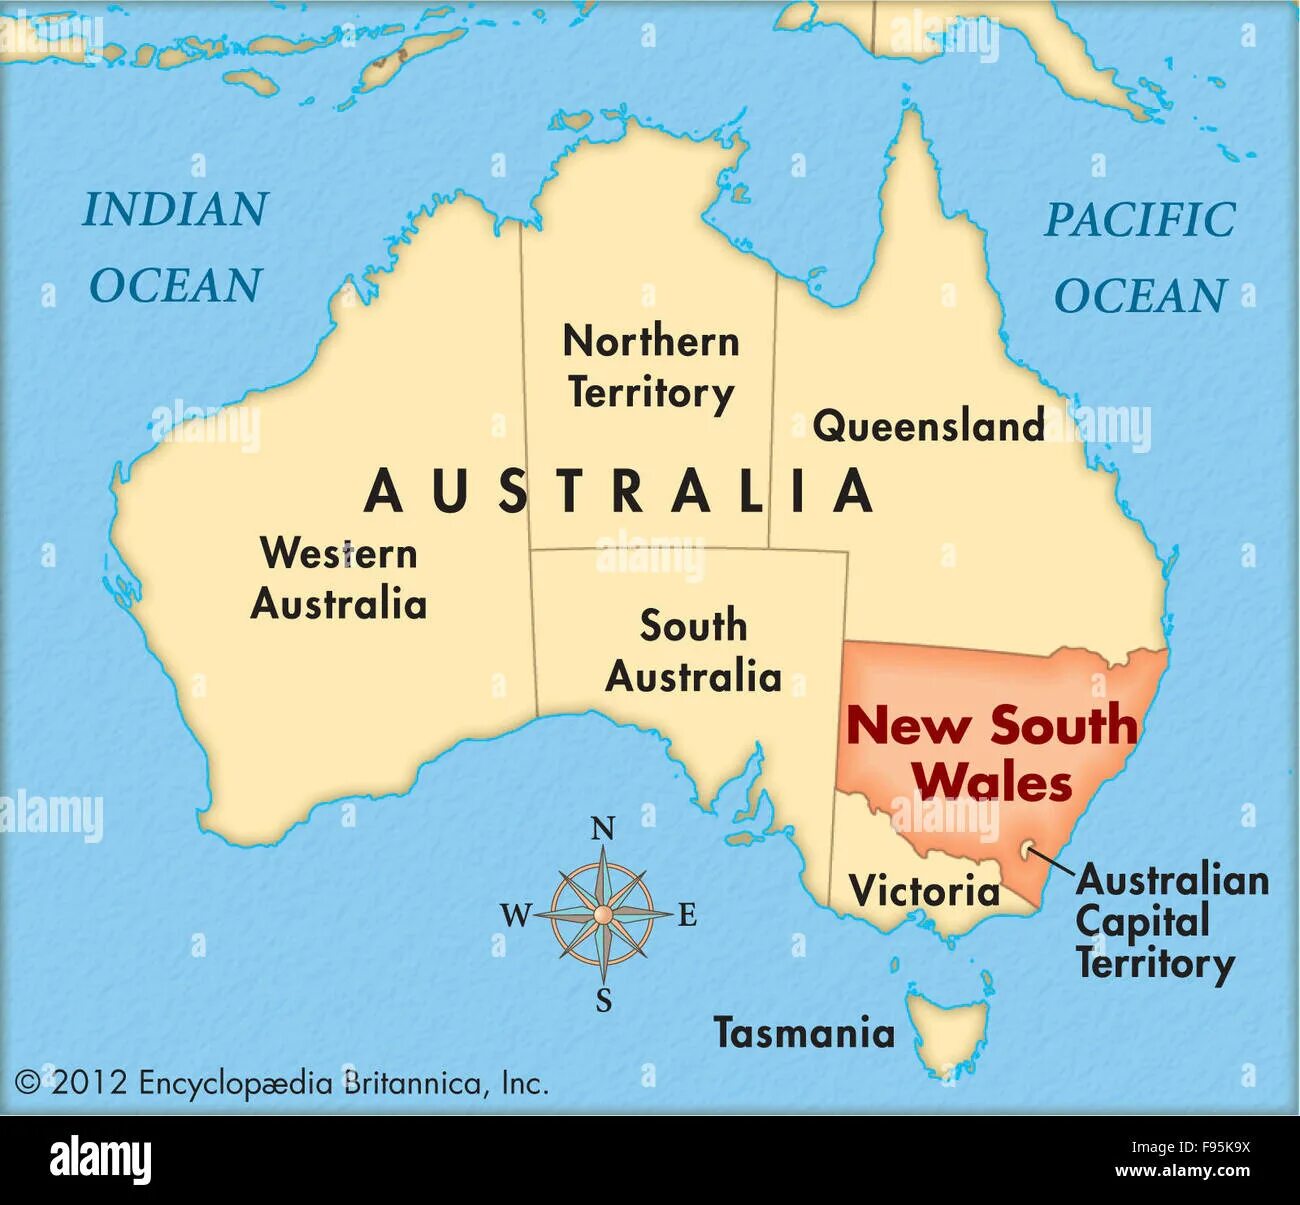 Штат новый Южный Уэльс Австралия на карте. Квинсленд Австралия на карте. Нью Саус Уэльс Австралия карта. Новый Южный Уэльс Австралия.